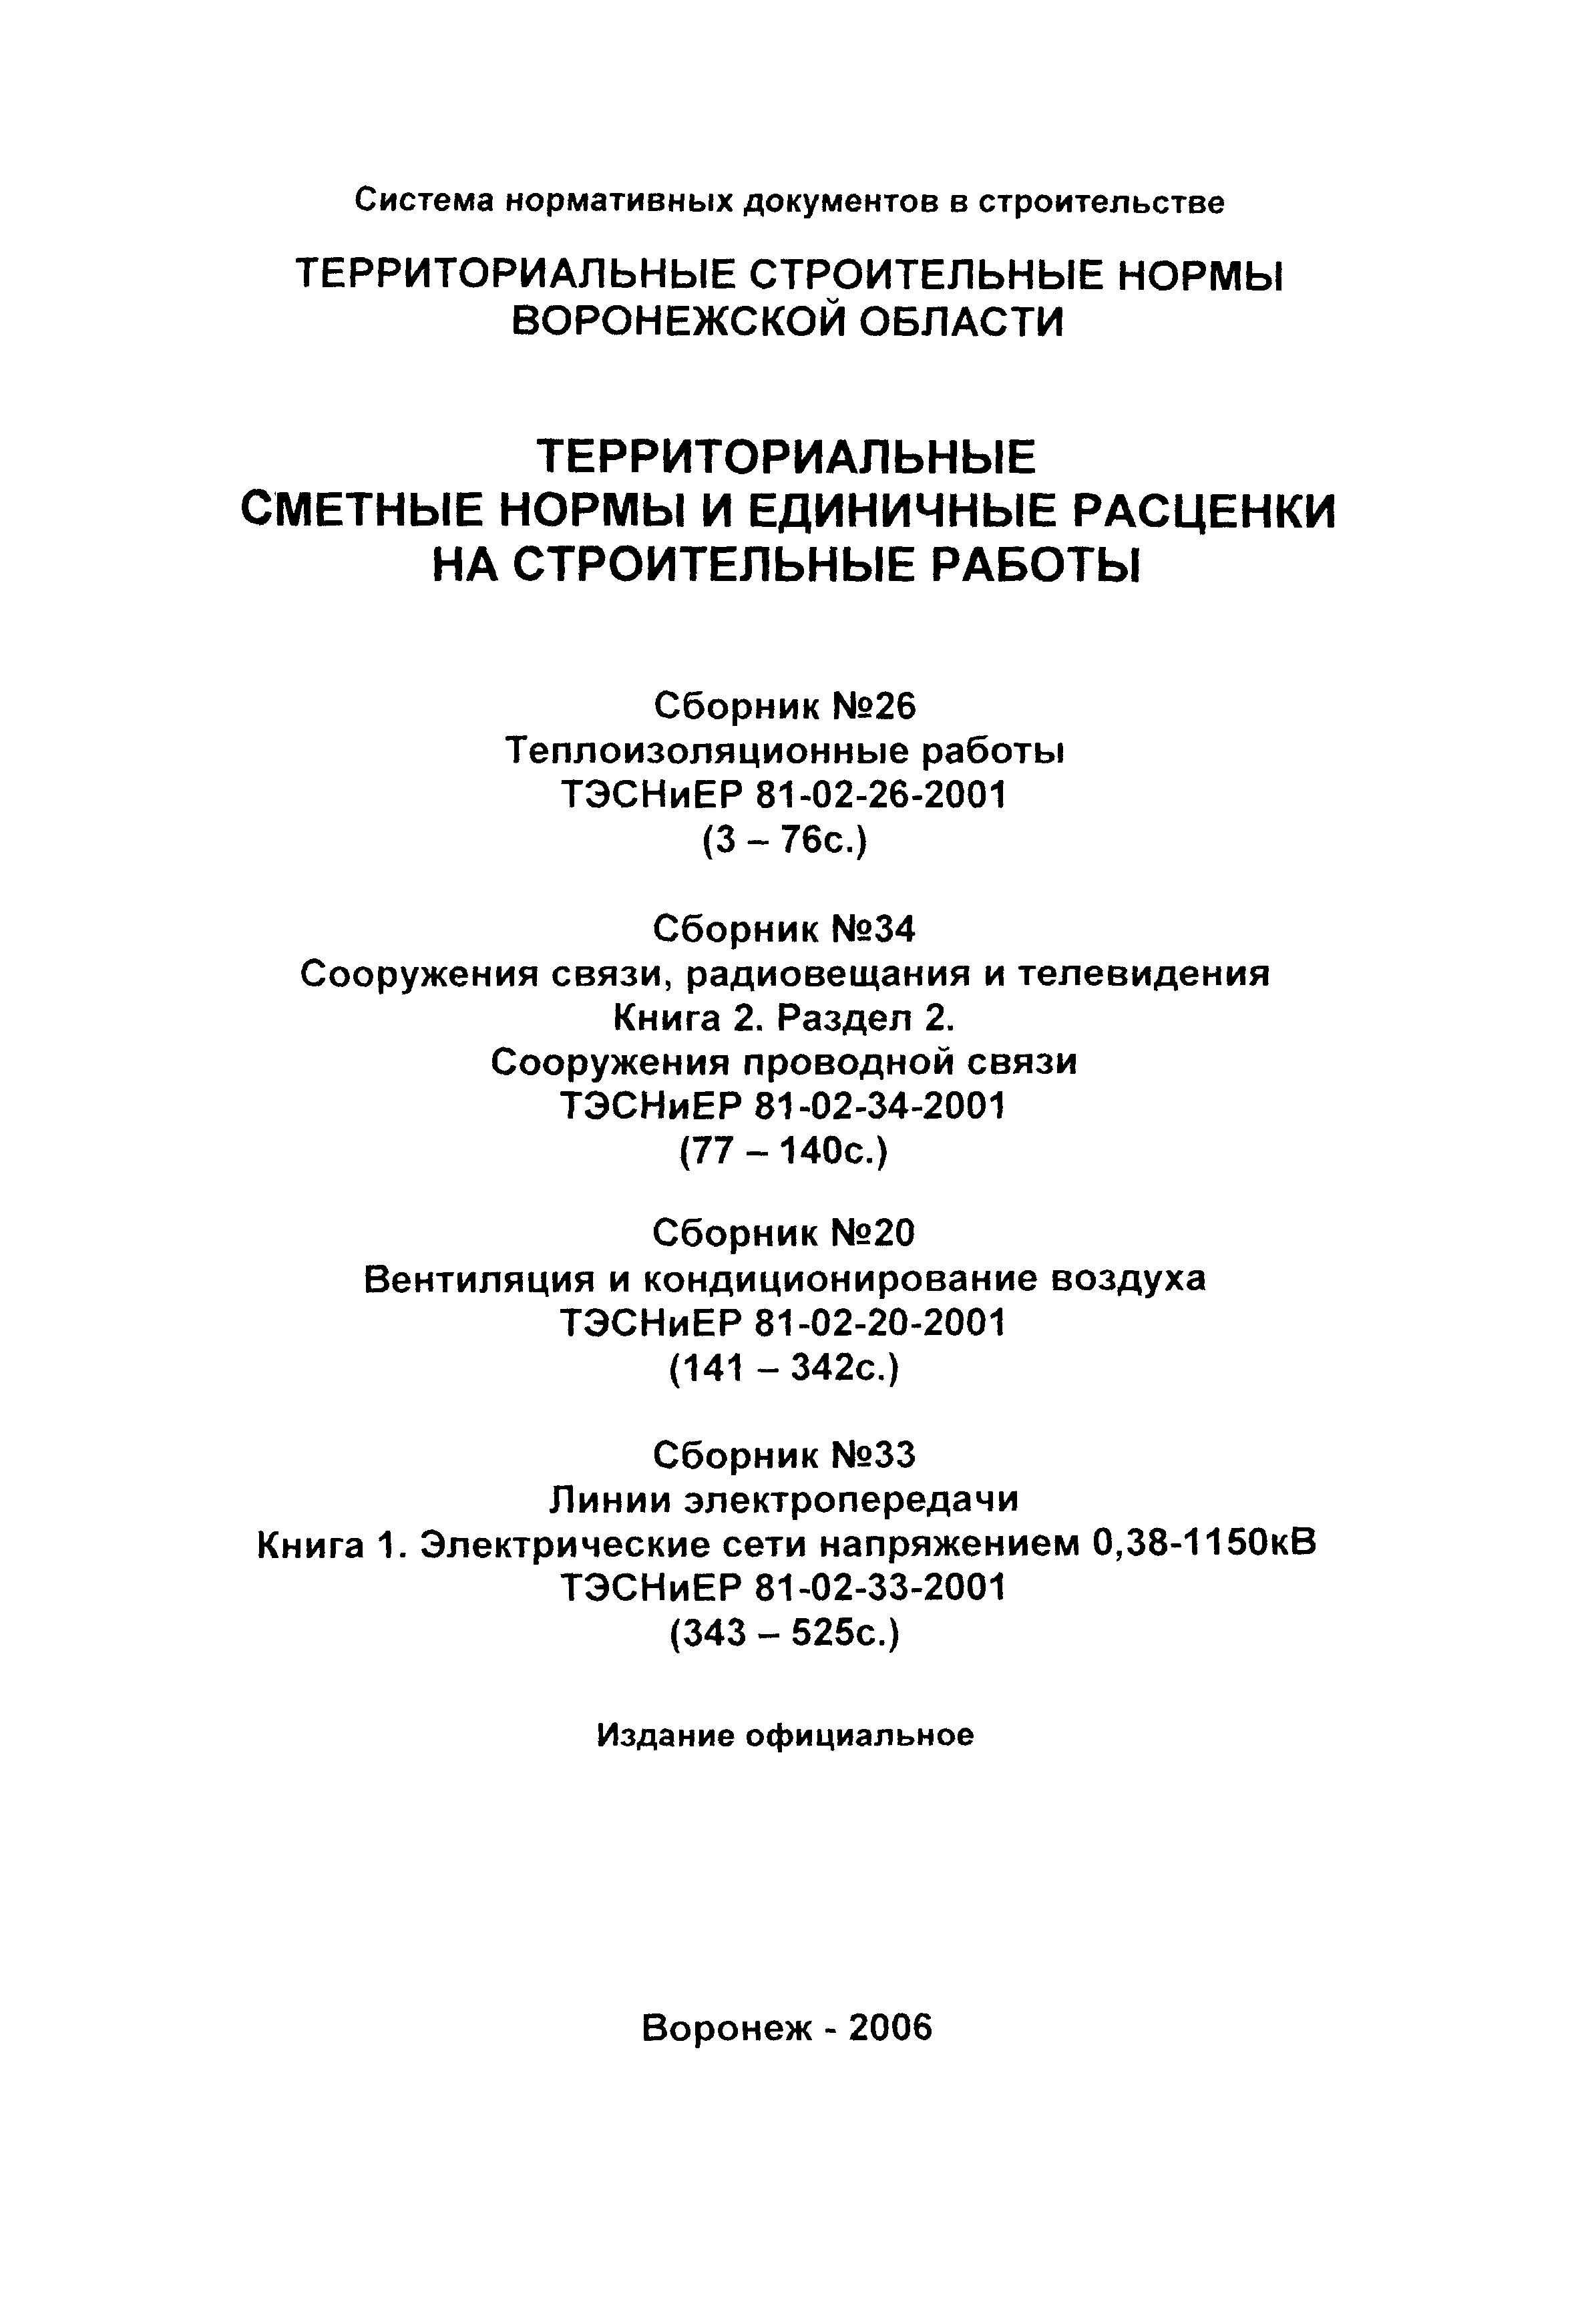 ТЭСНиЕР Воронежская область 81-02-34-2001